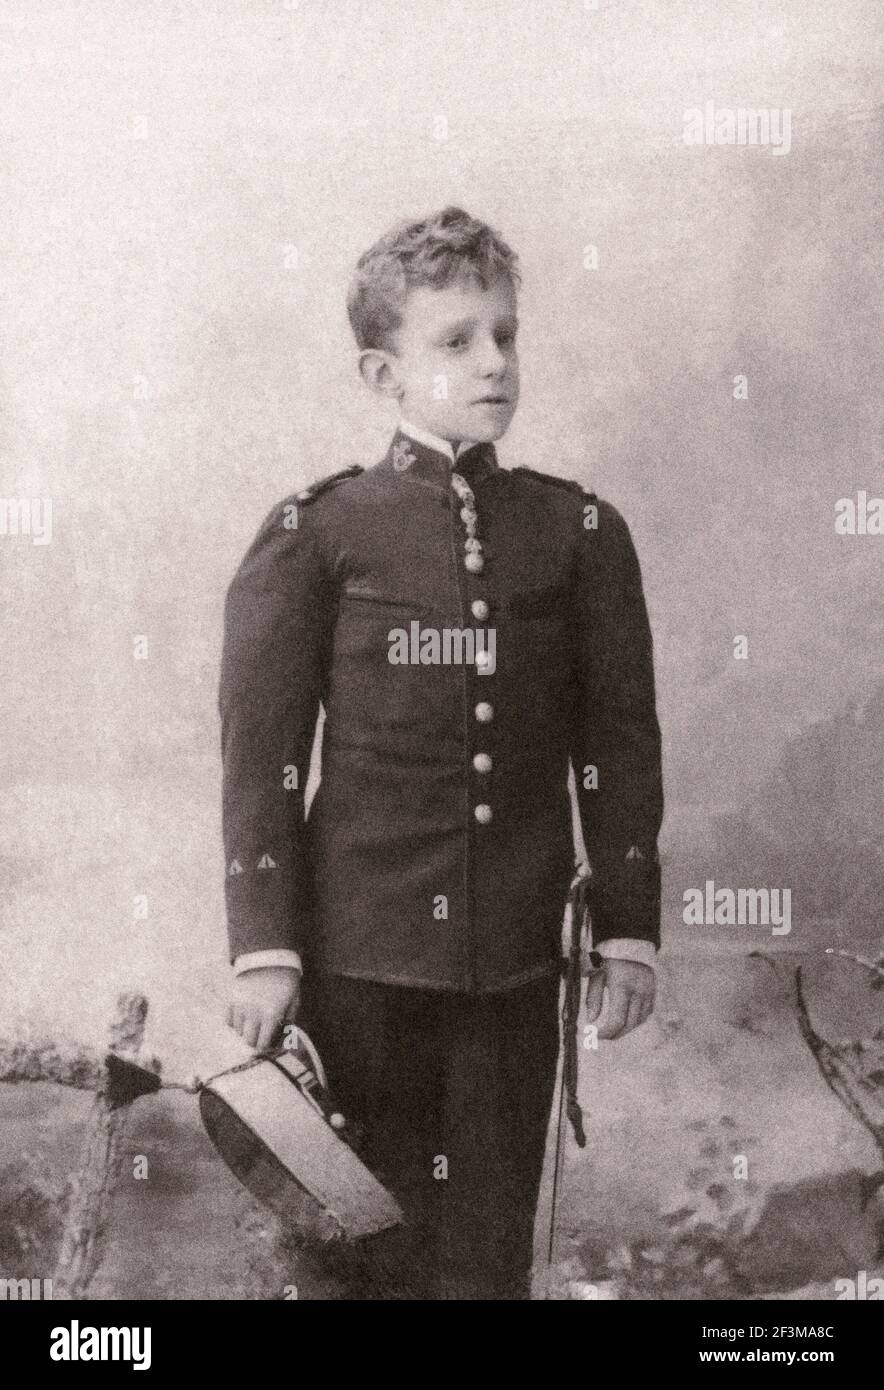 Retor Foto des jungen Alphonse XIII von Spanien. Alfonso XIII (1886 – 1941), auch bekannt als El Africano oder der Afrikaner, war König von Spanien von 1886 bis t Stockfoto